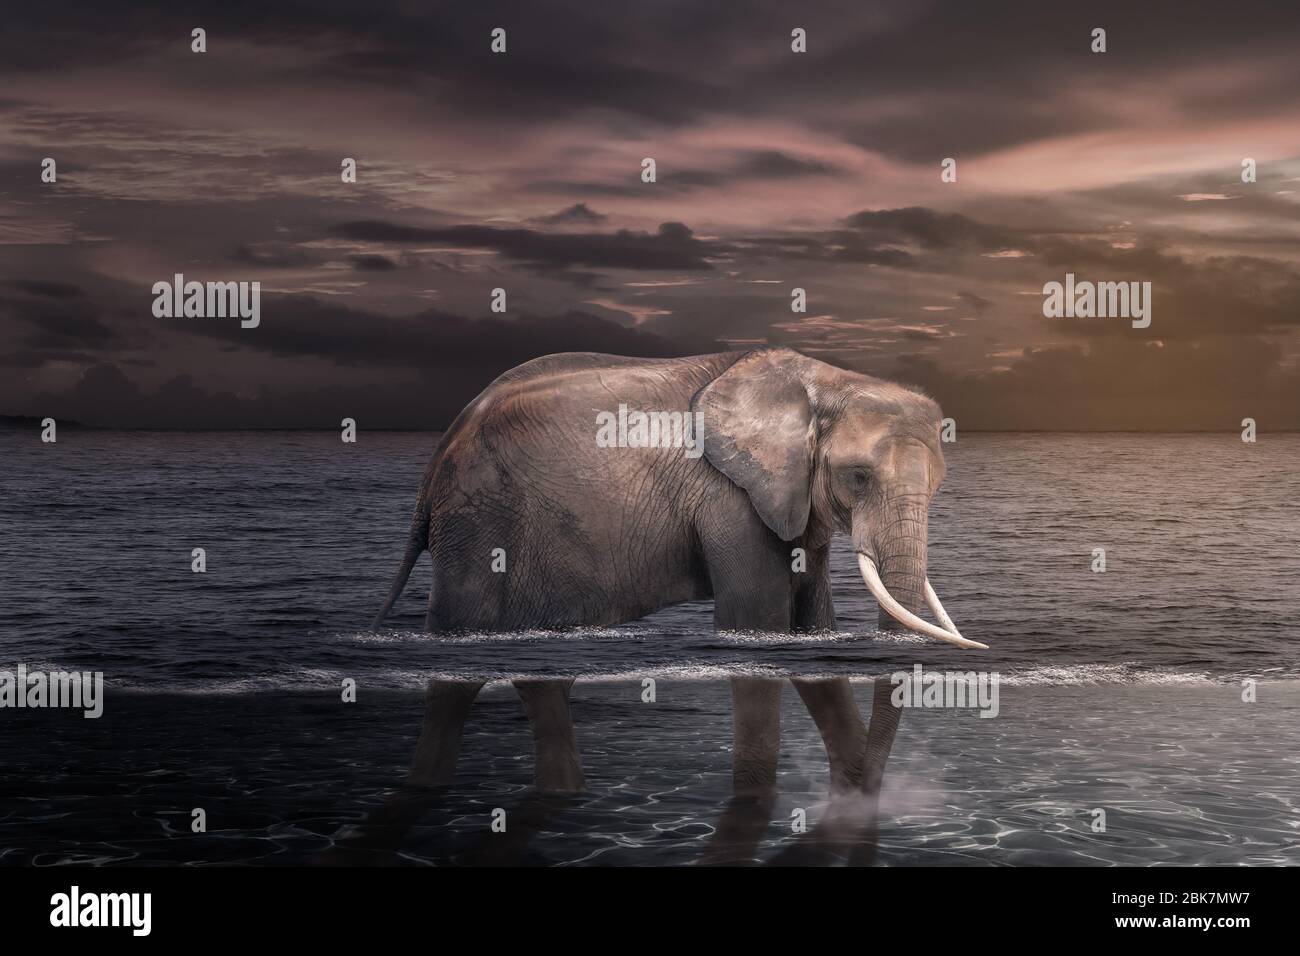 Elefante africano en el agua. Foto de stock